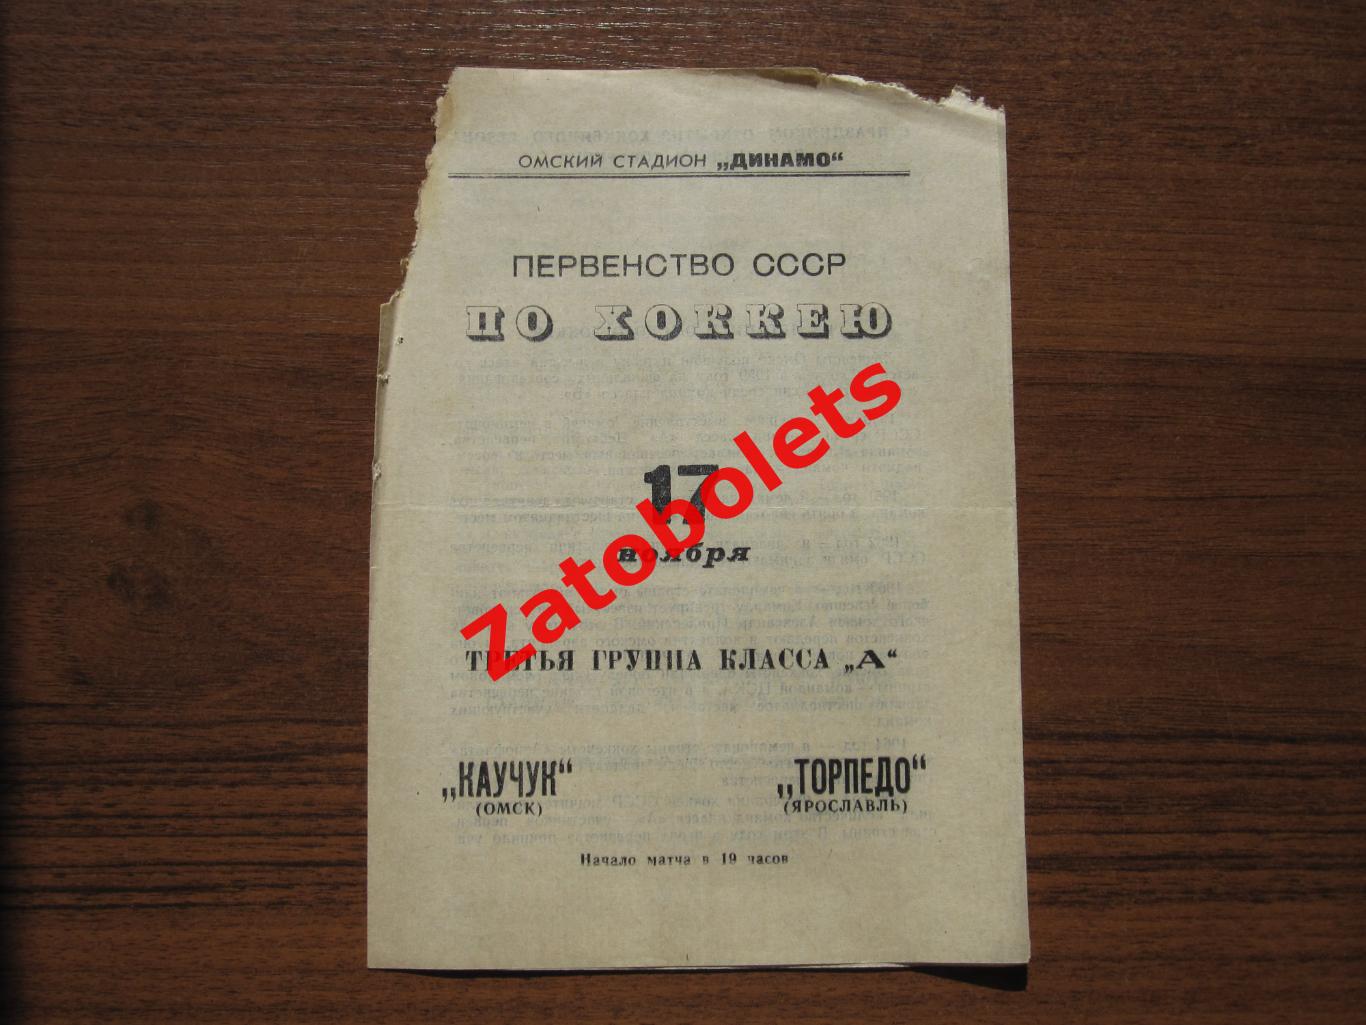 Каучук Омск - Торпедо Ярославль 17.11.1967